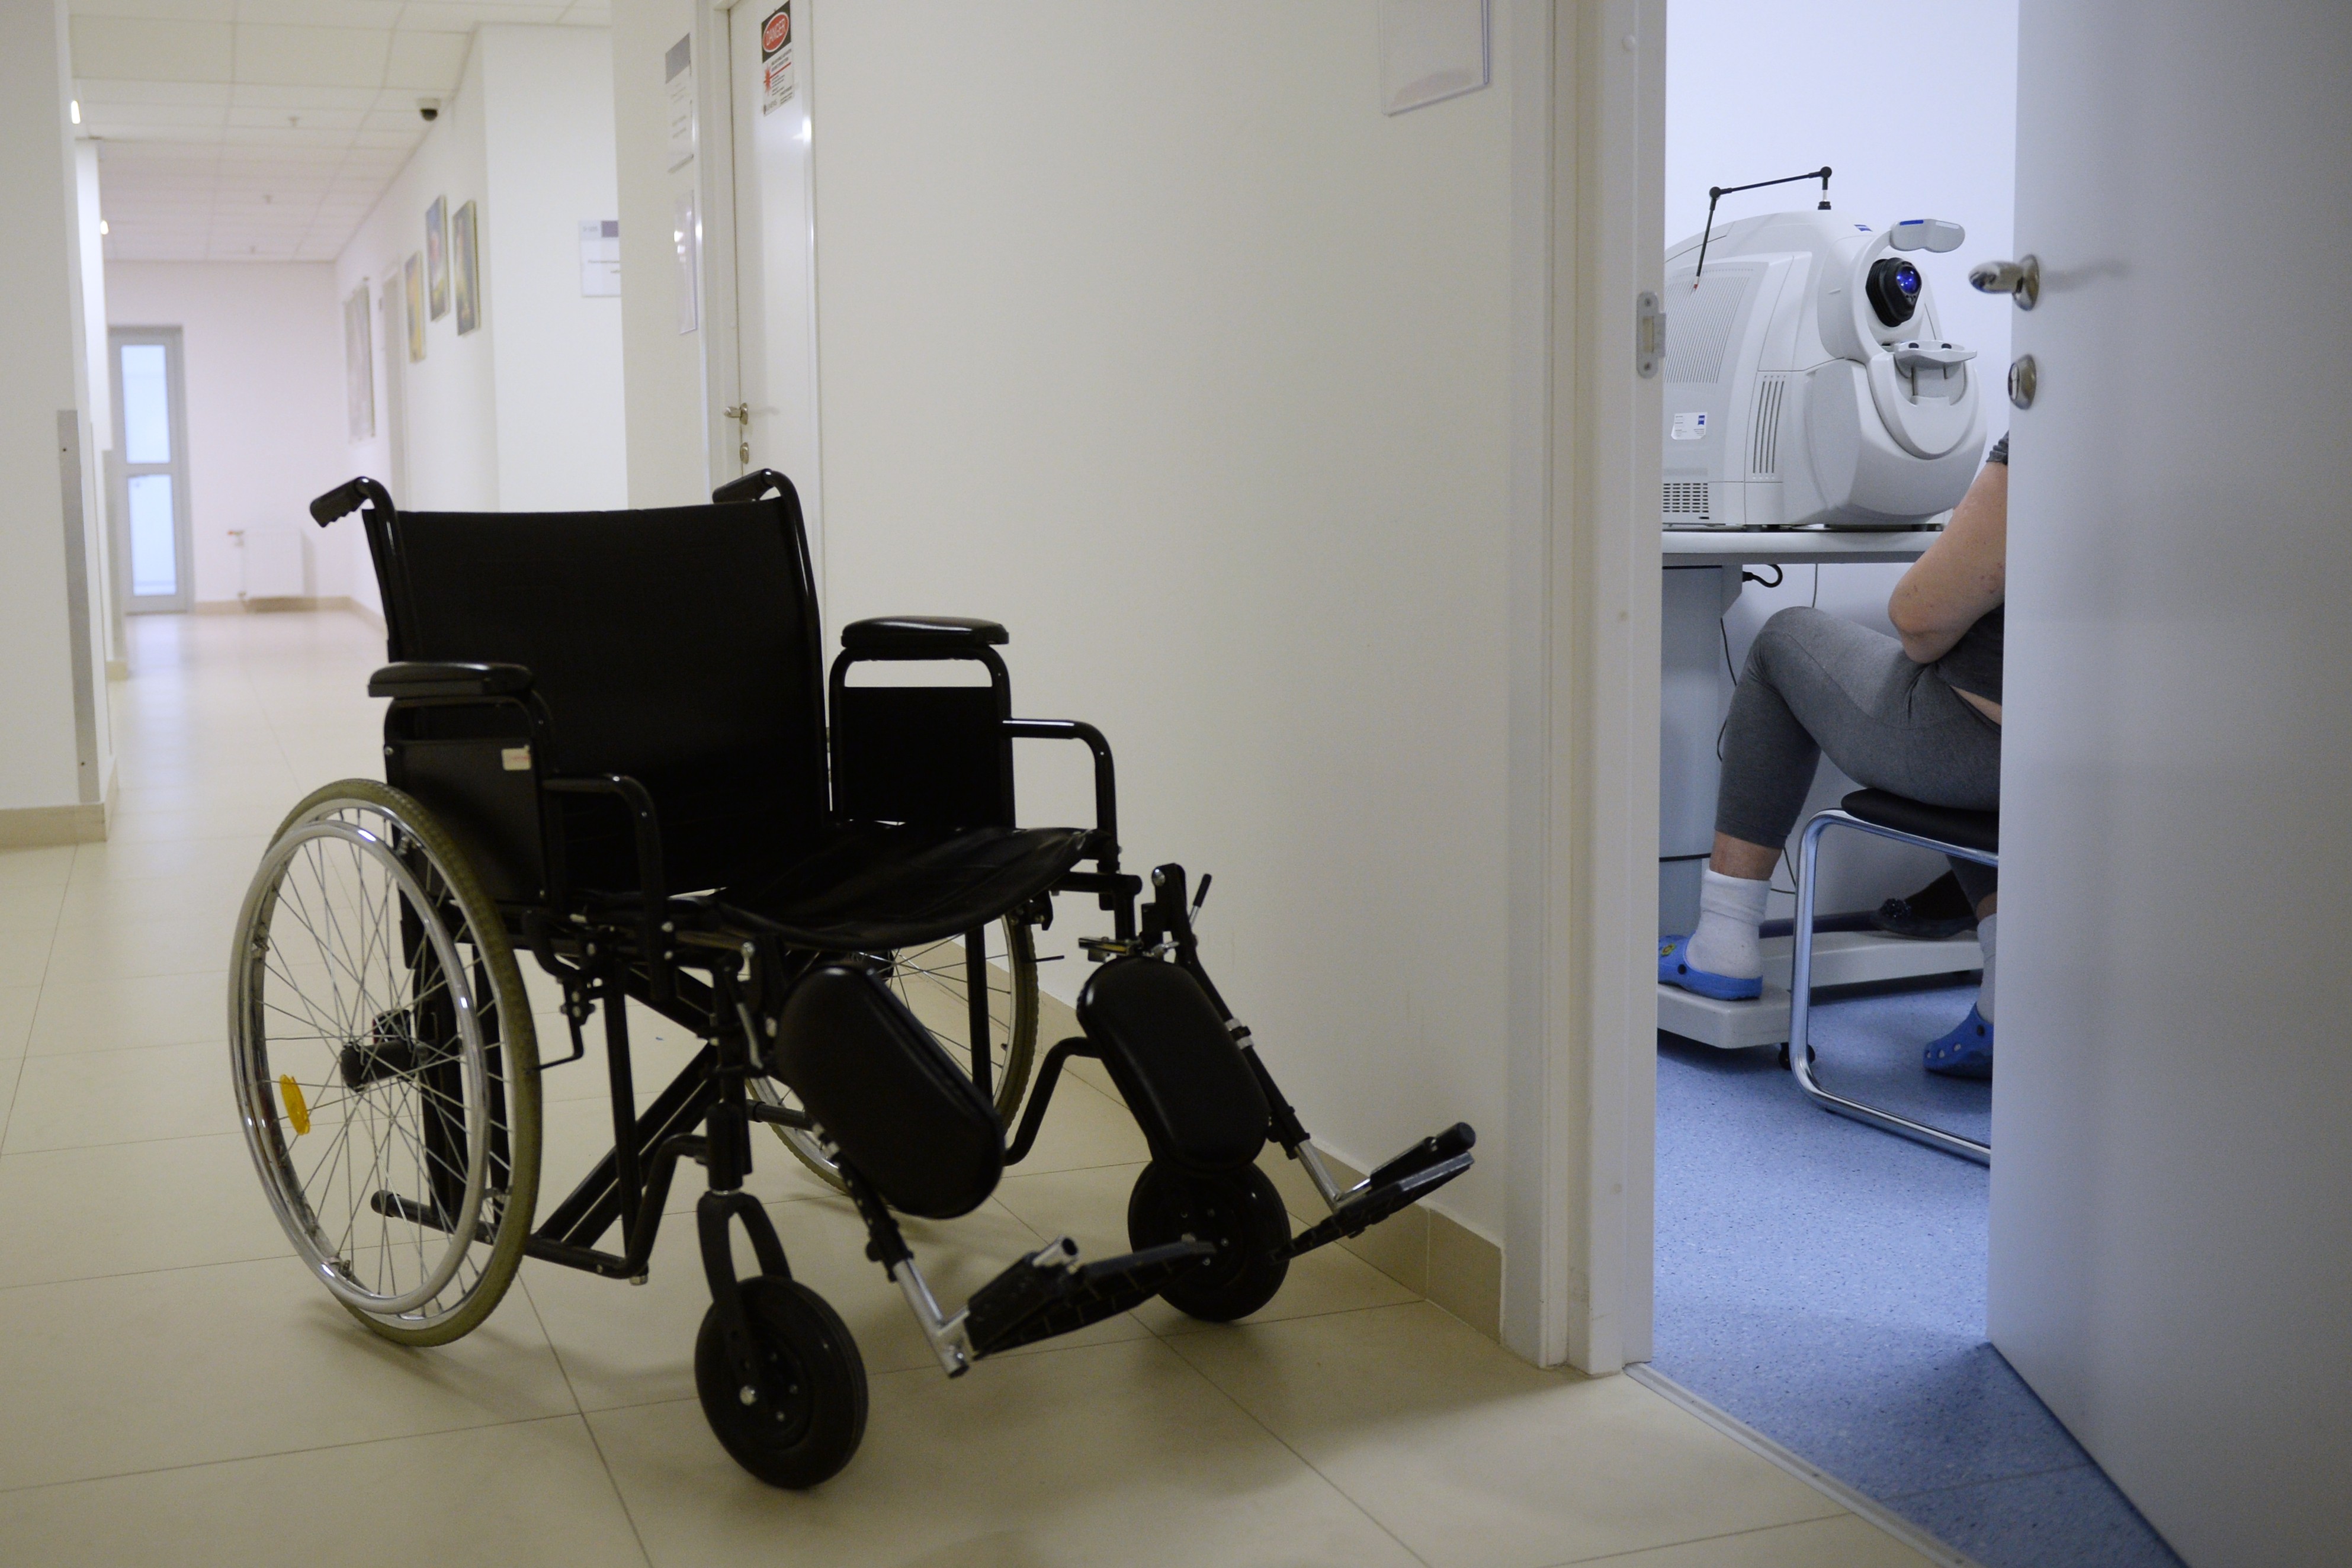 Центр здоровья инвалиды. Средства реабилитации для инвалидов. Коляска для инвалидов. Коляска детская для инвалидов в больнице. Инвалид на инвалидной коляске.